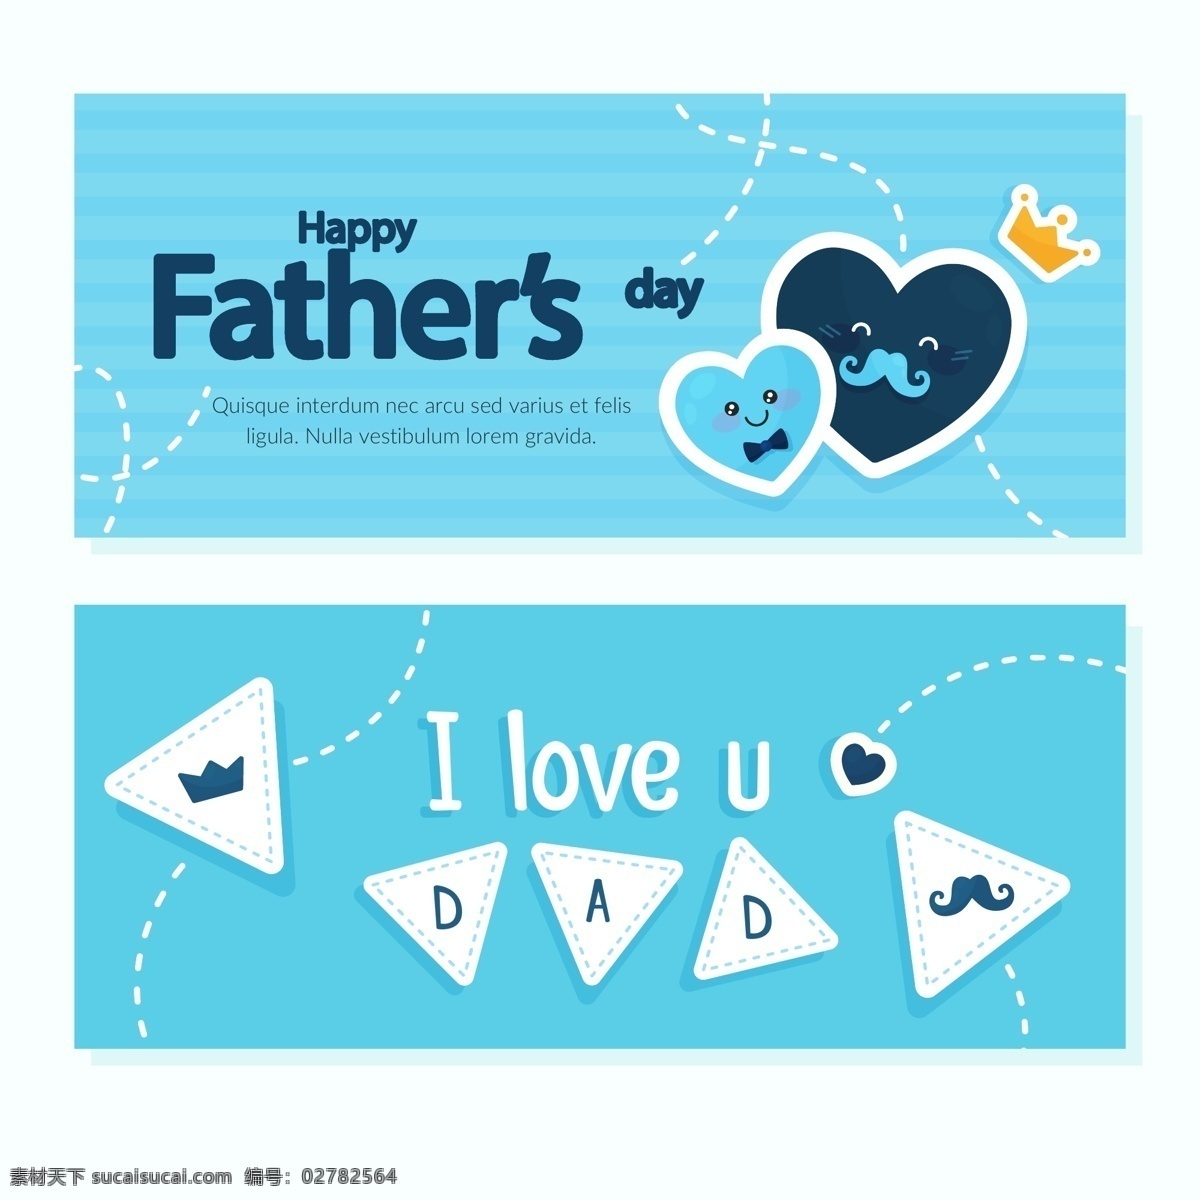 蓝色 父亲节 元素 父亲节素材 父亲节元素 父亲节的爱